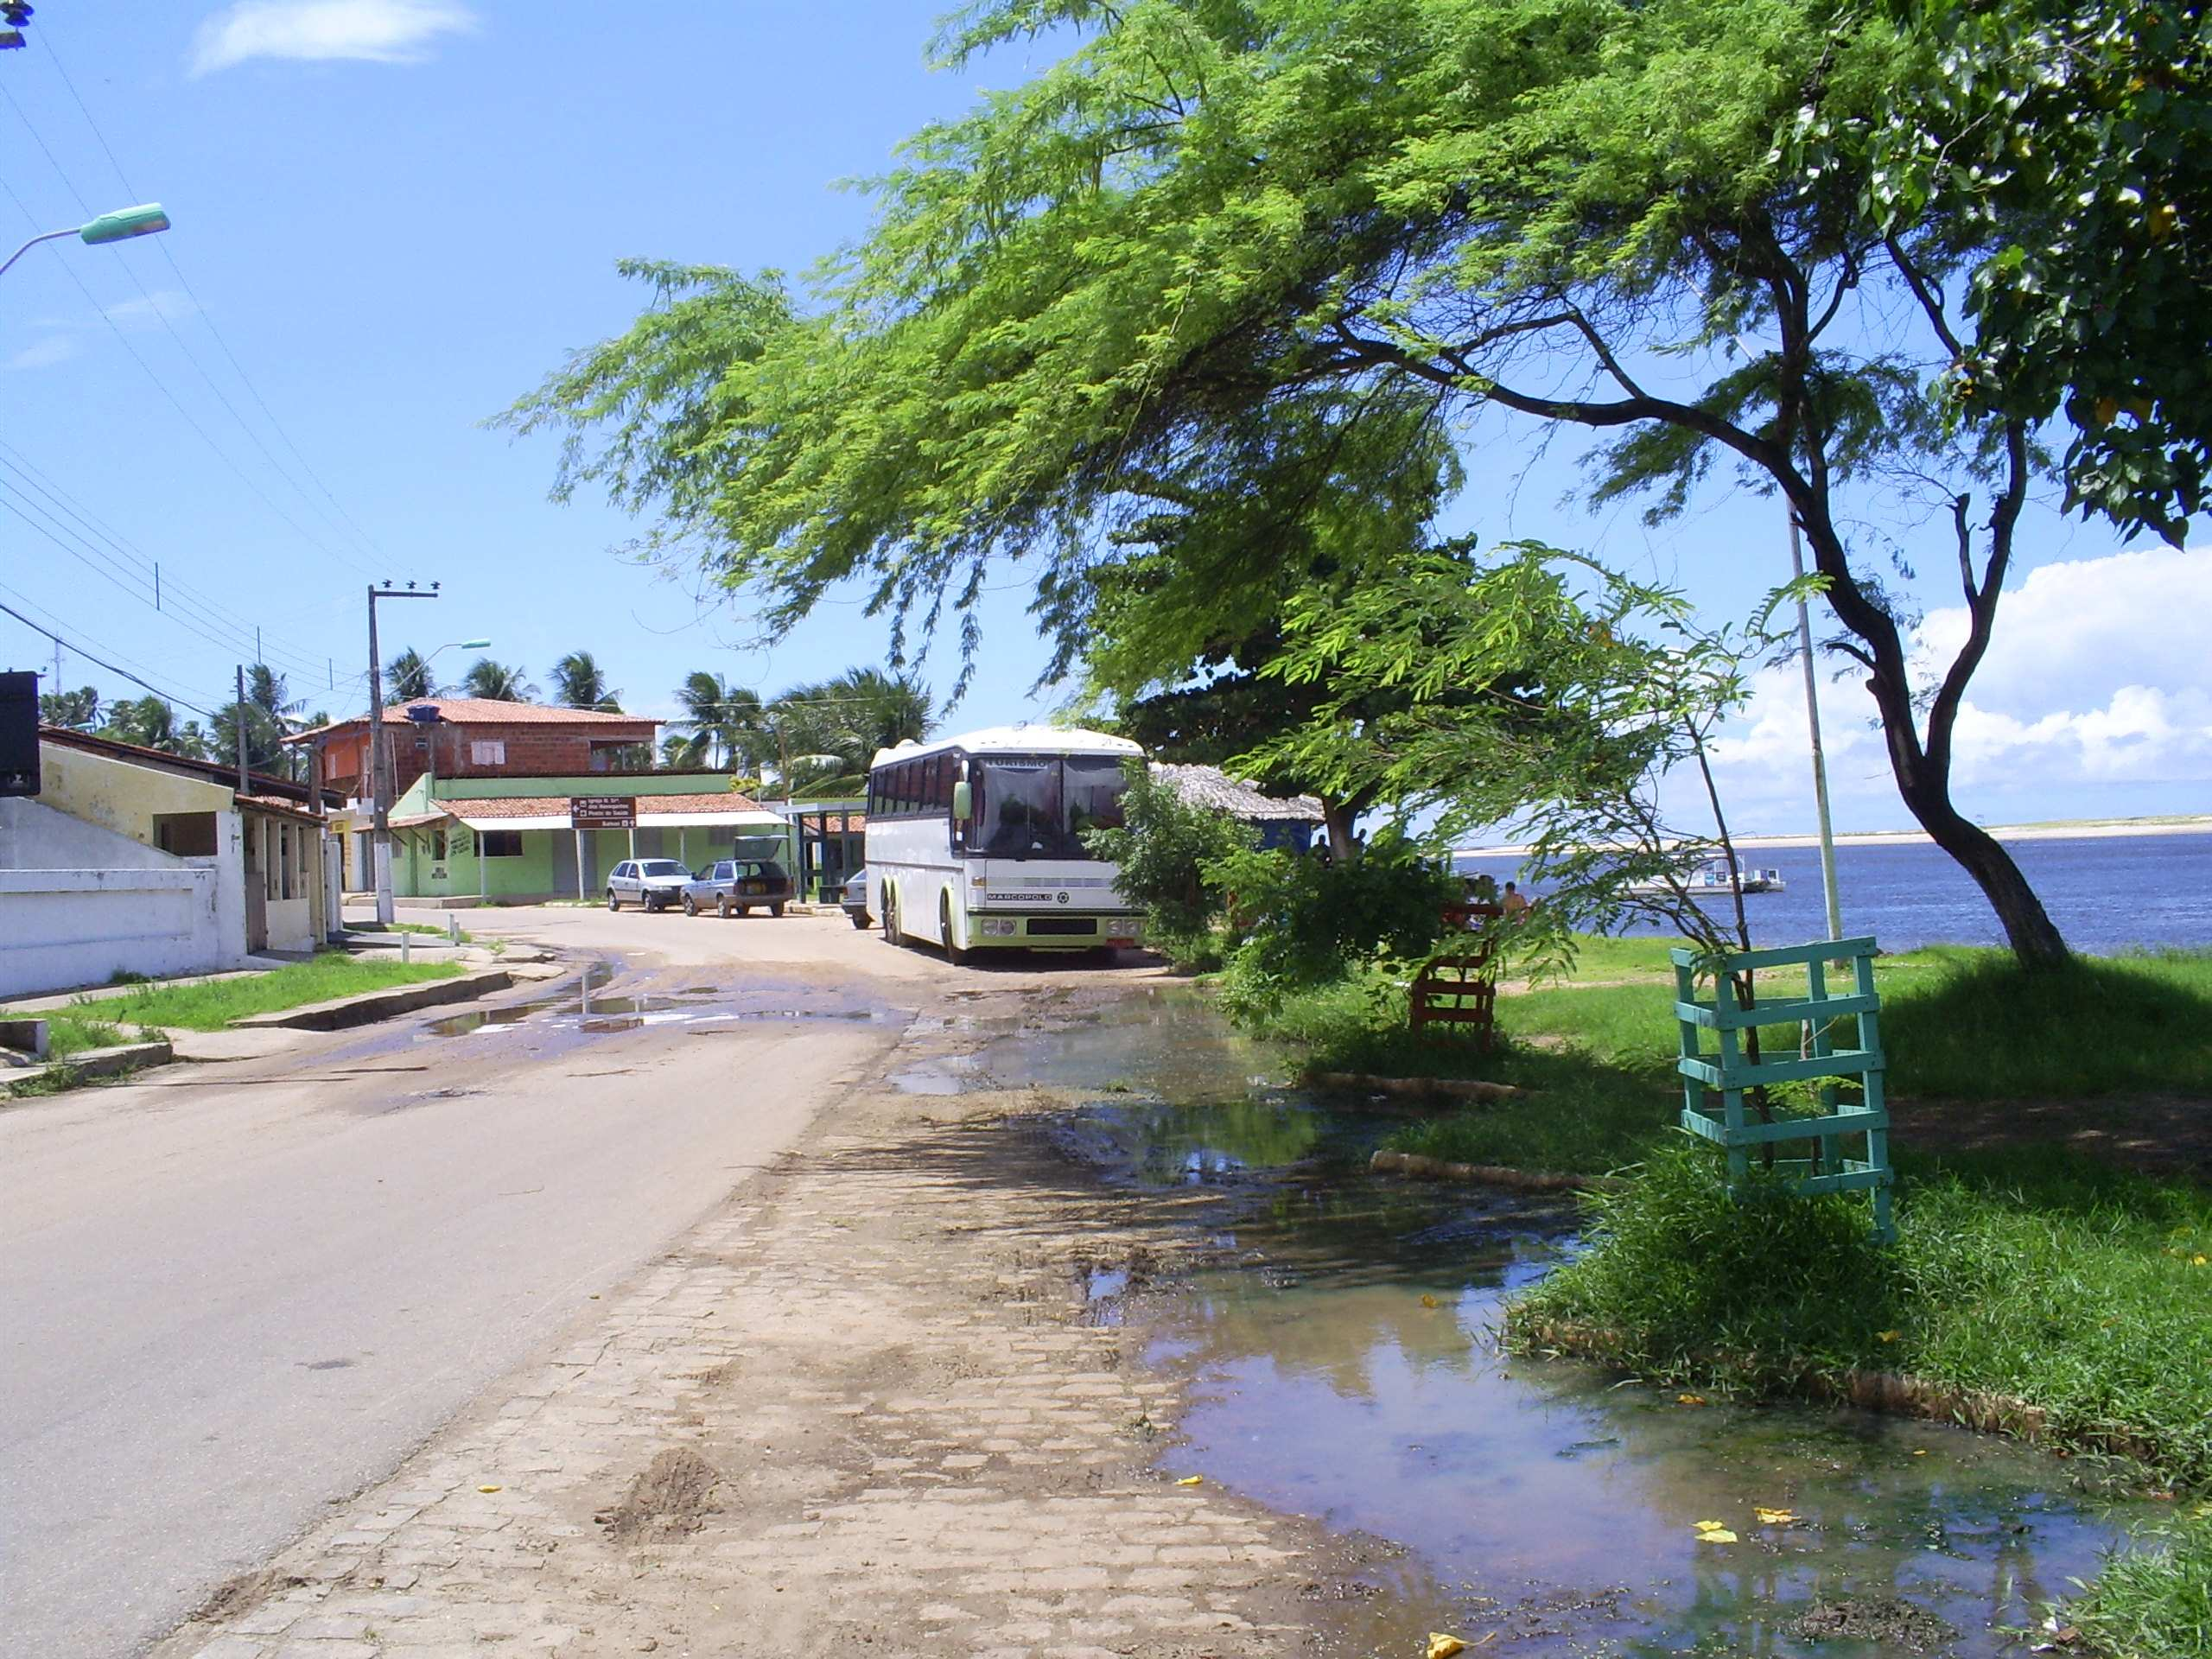 RESULTADOS E DISCUSSÕES Foram entrevistadas 15 pessoas da região costeira de Barra do Cunhaú sobre as condições de saneamento básico na área citada, onde foi possível perceber durante a entrevista